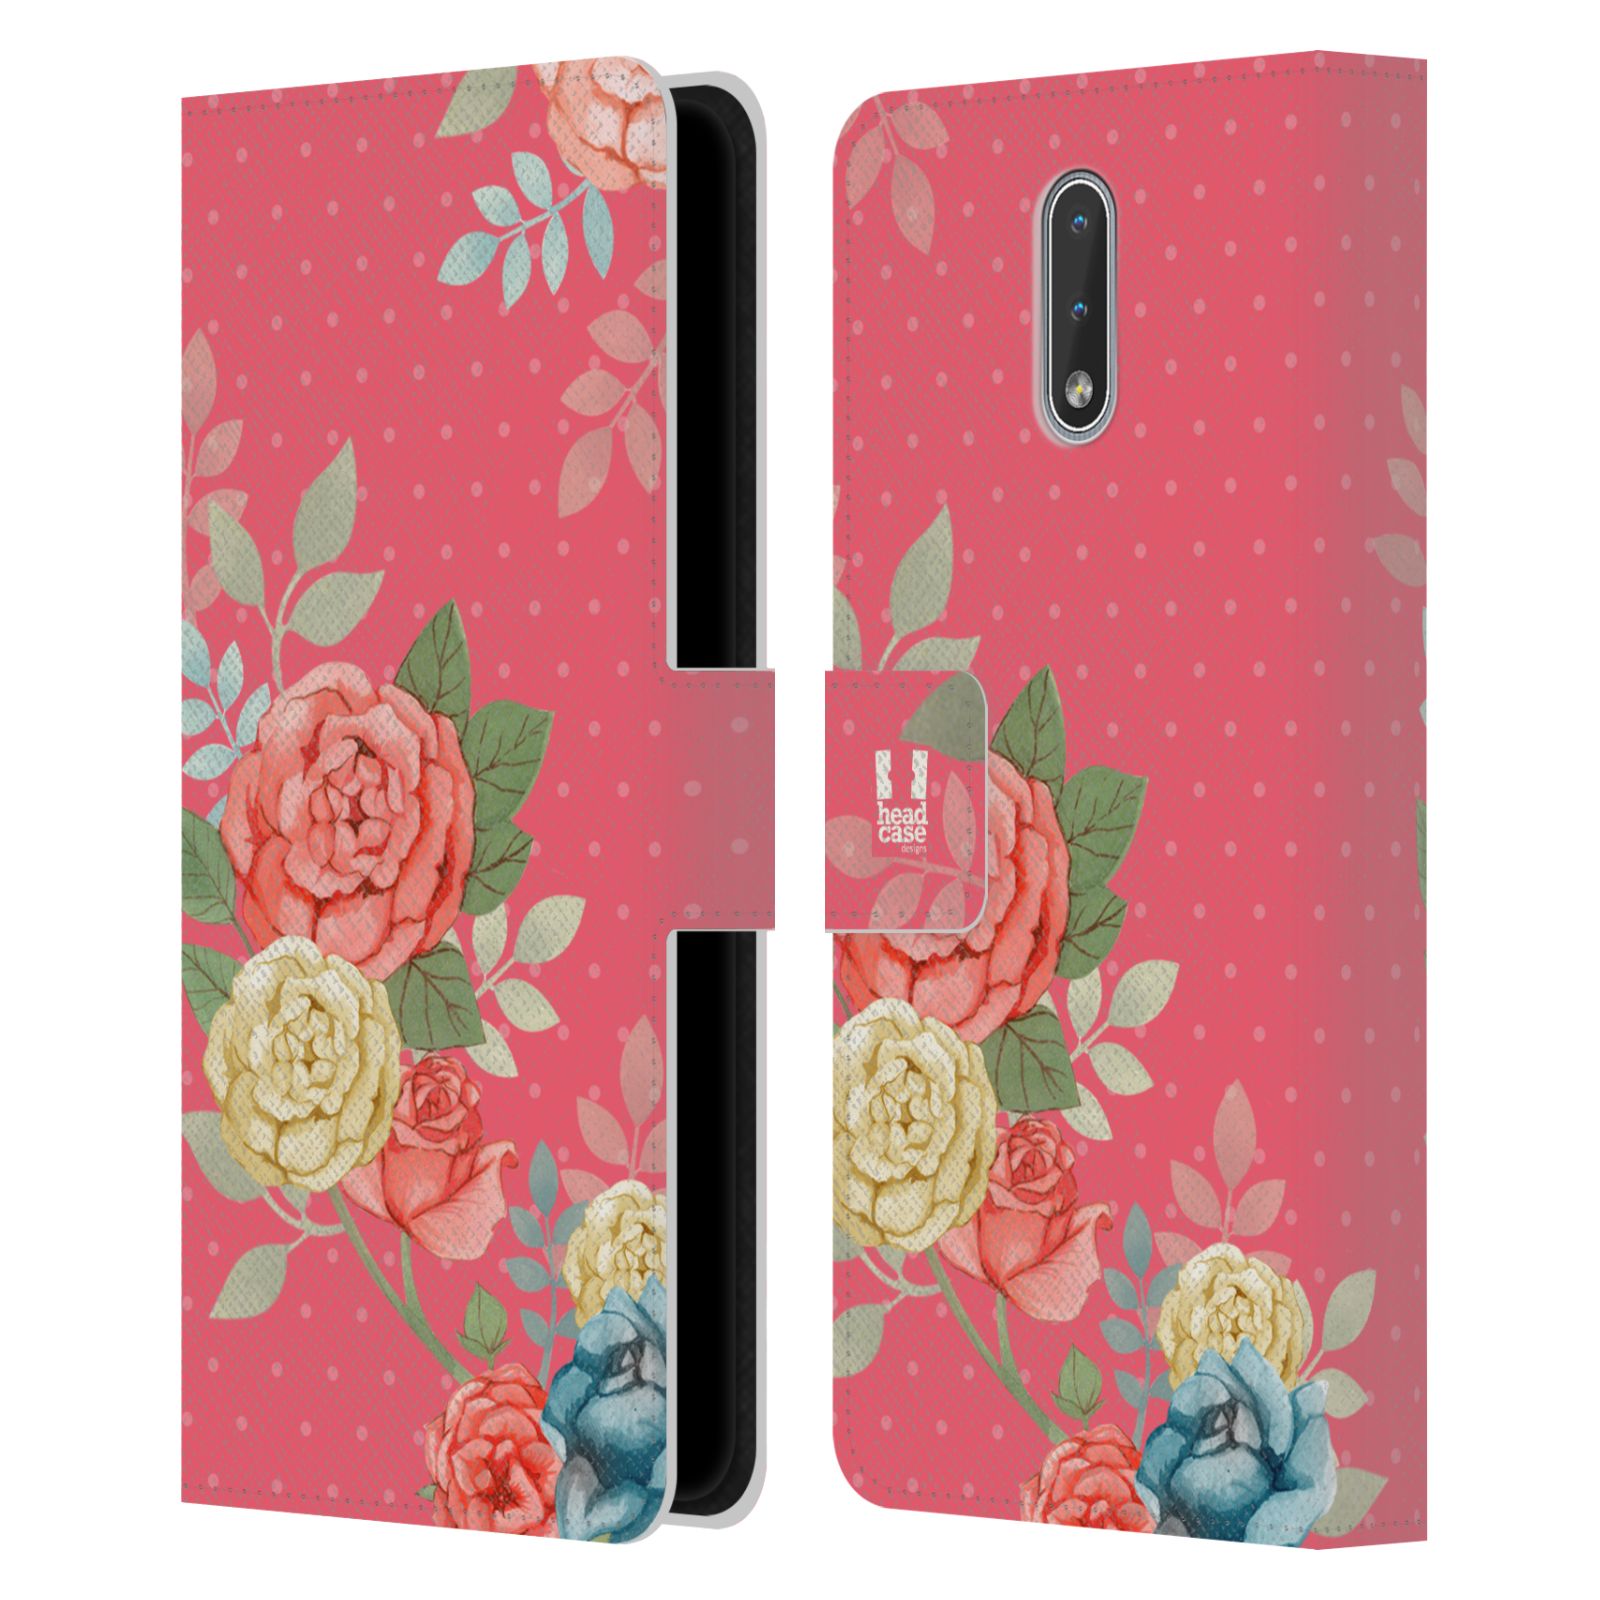 Pouzdro HEAD CASE na mobil Nokia 2.3 romantické květy růžová